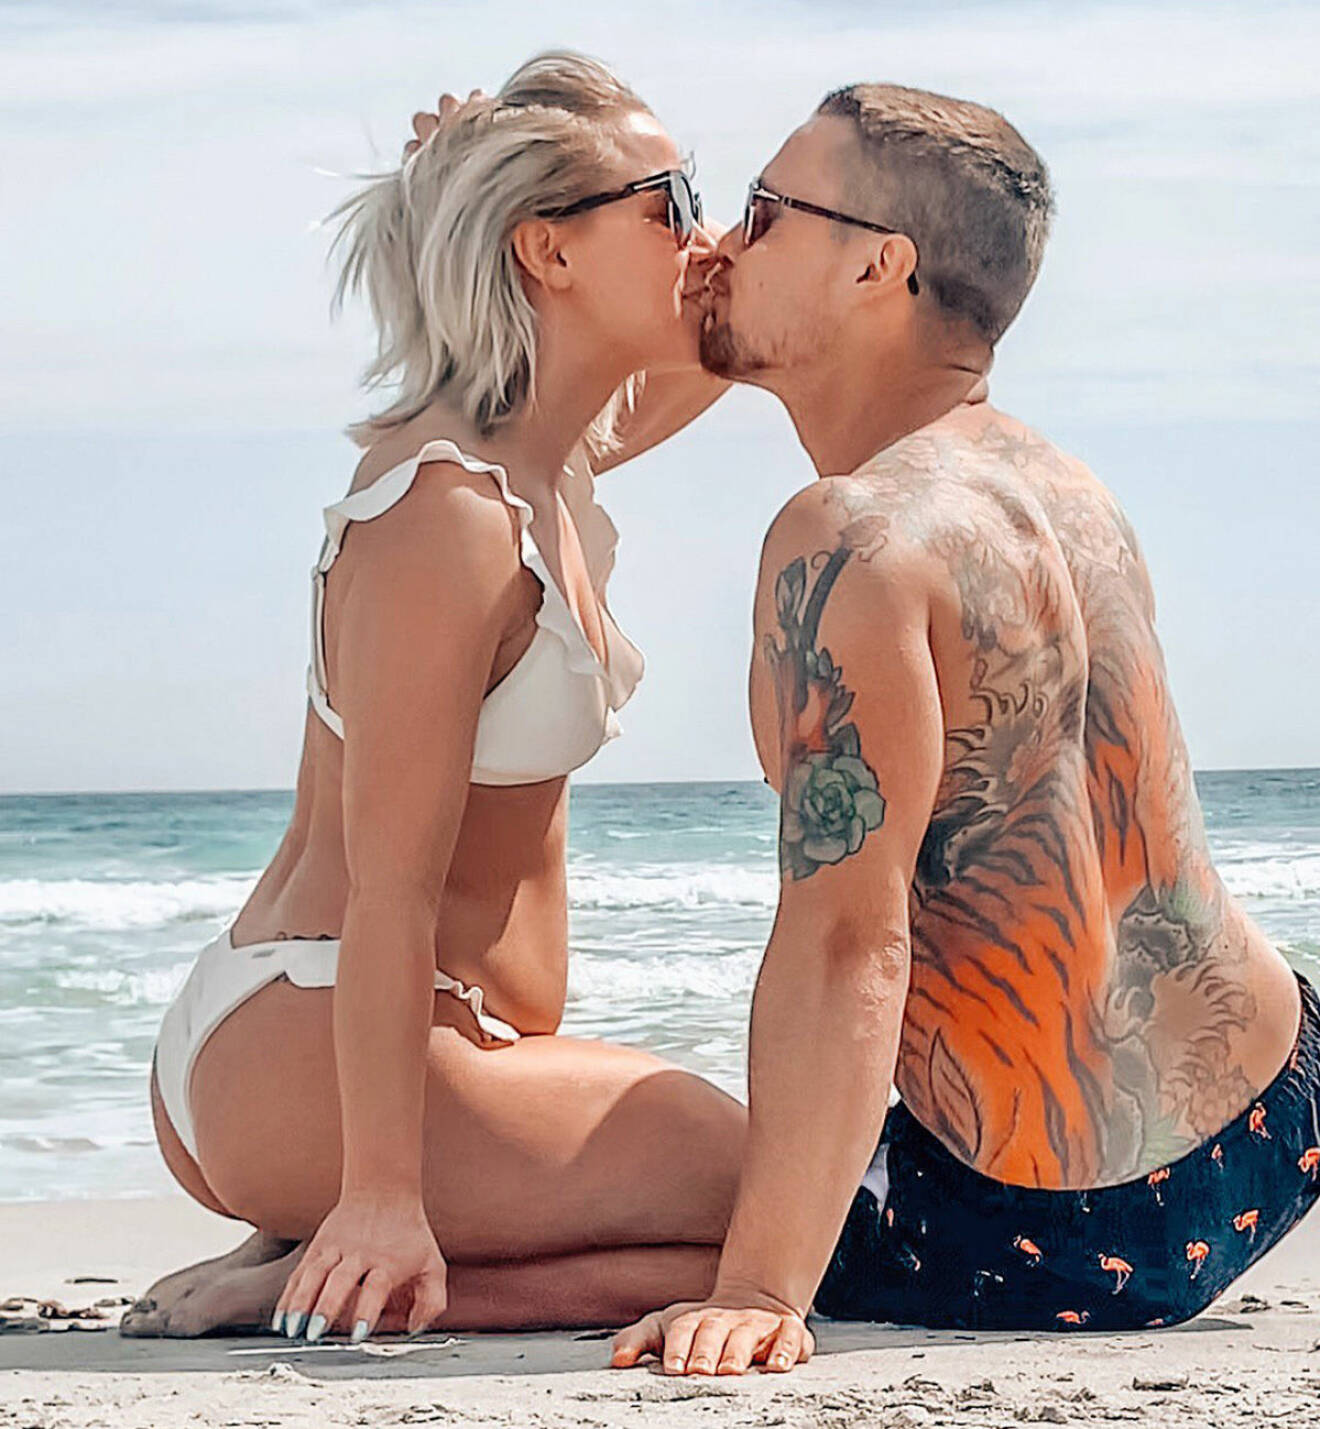  Theodora Larsson och Anton Uddfalk kysser varandra på en strand